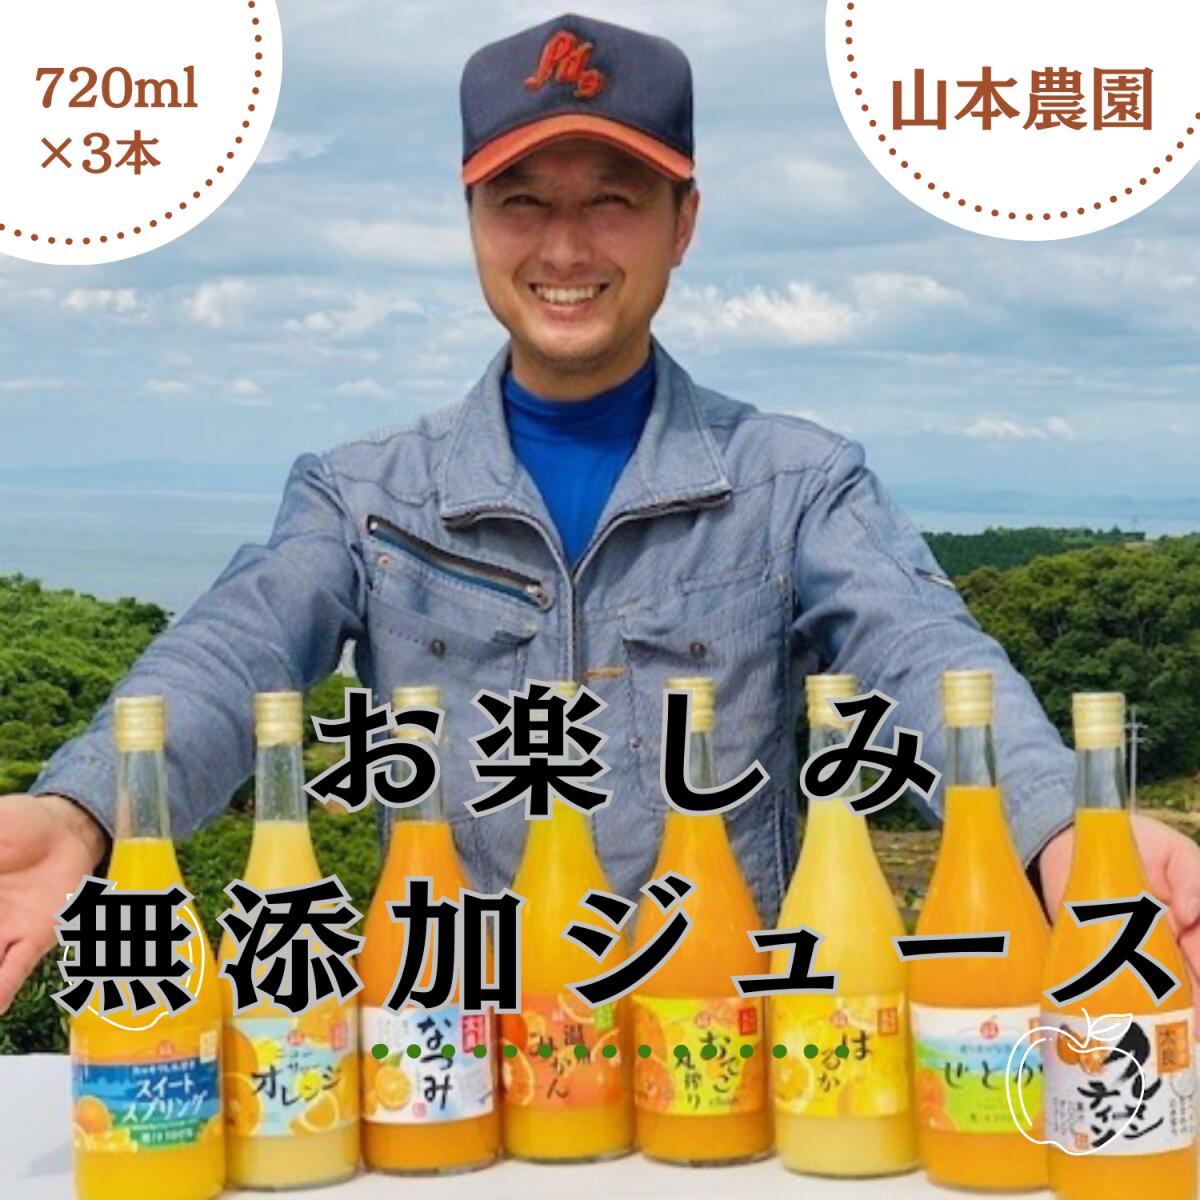 山本農園のお楽しみ無添加ジュース 3本セット オレンジジュース おやつ ドリンク